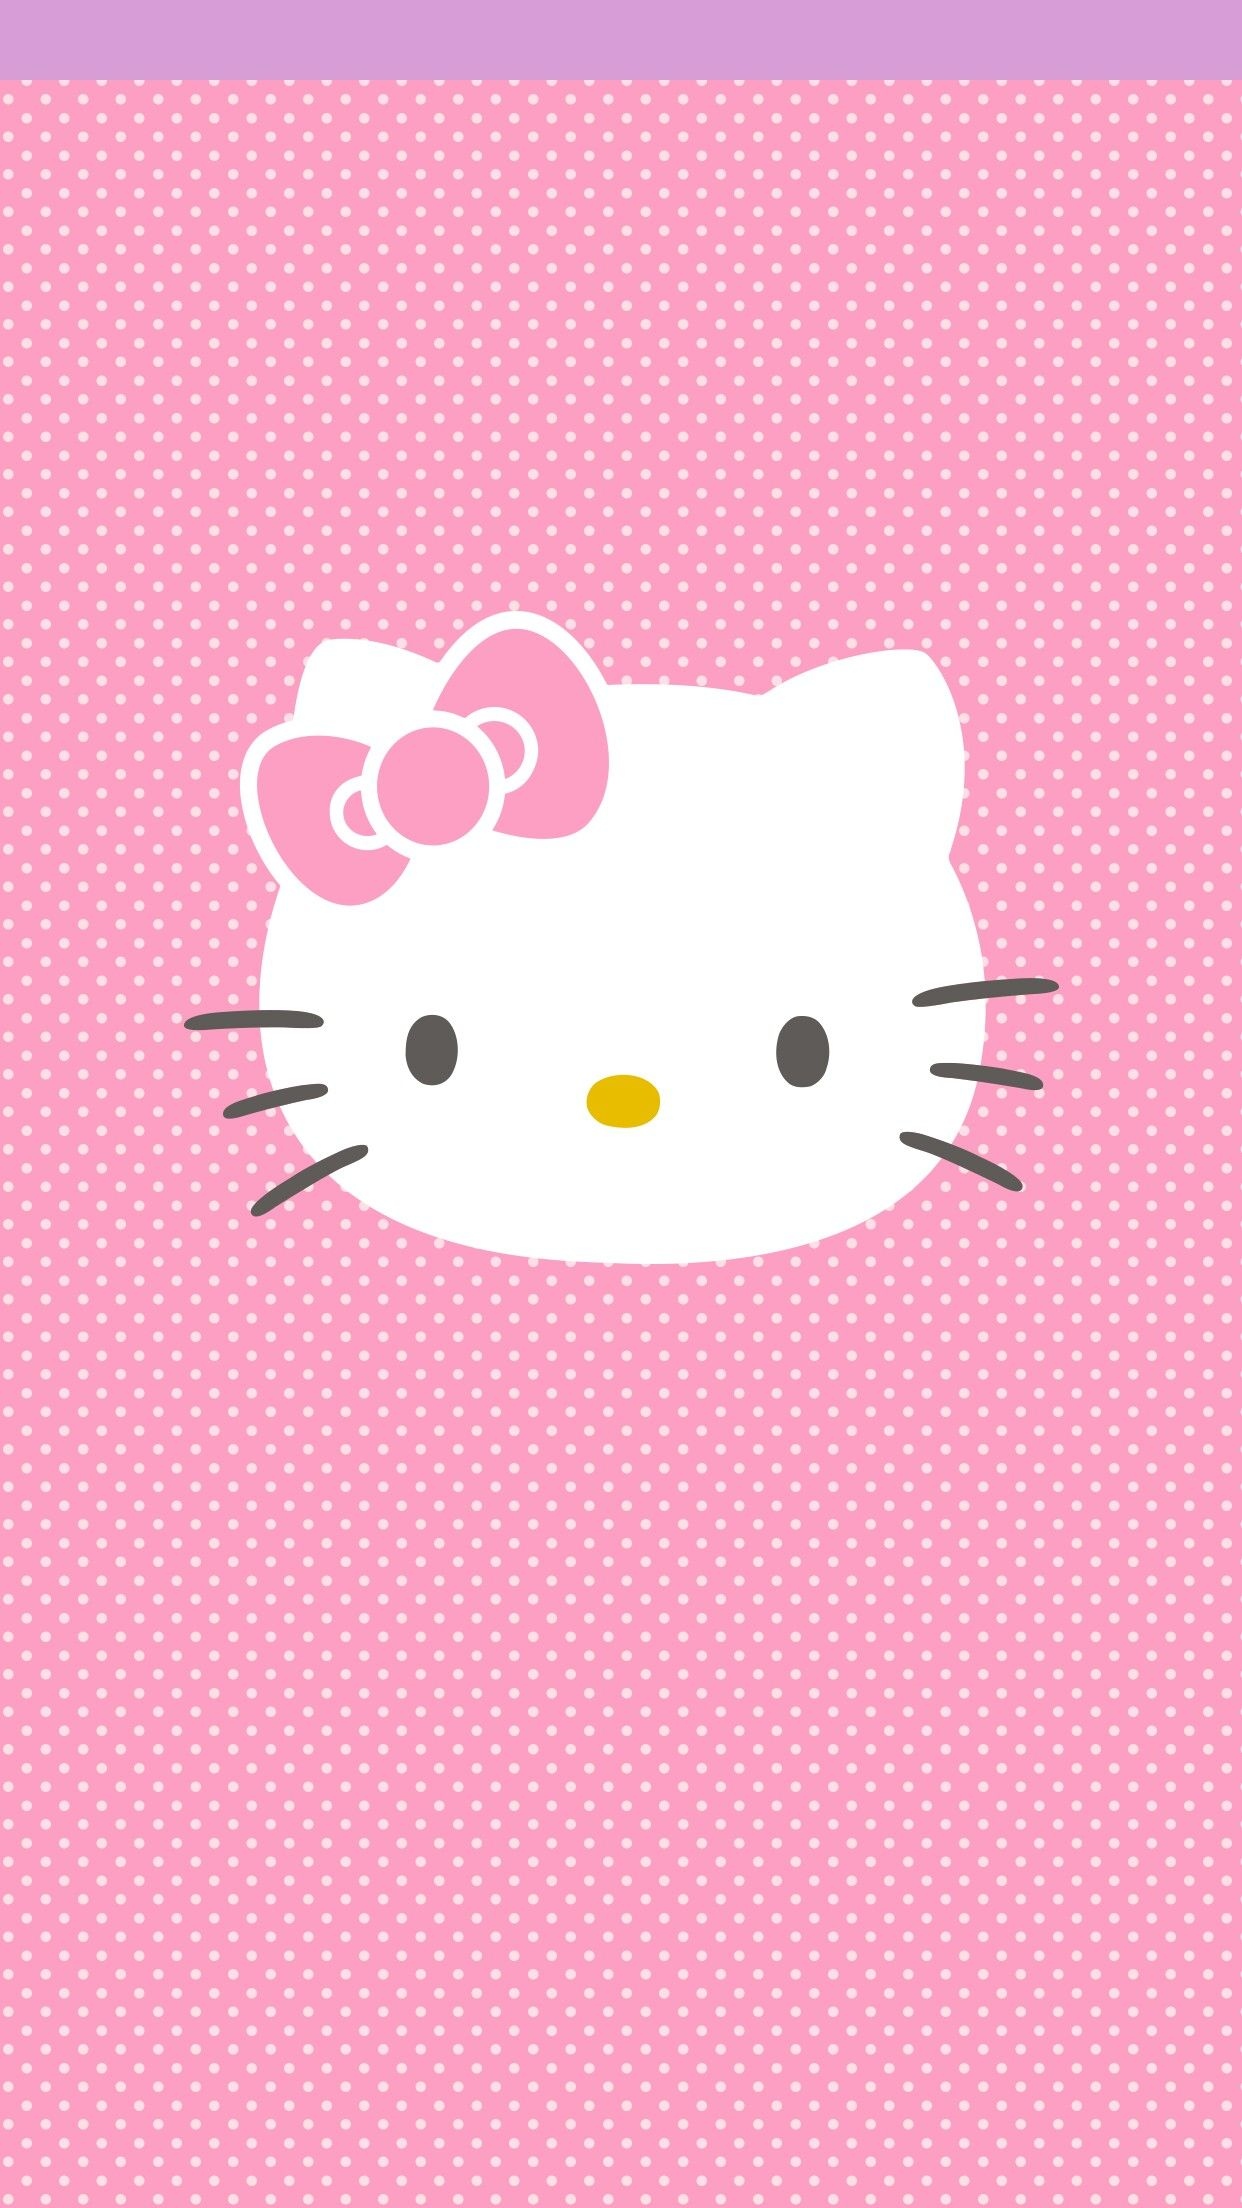 Cute Hello Kitty - White Face